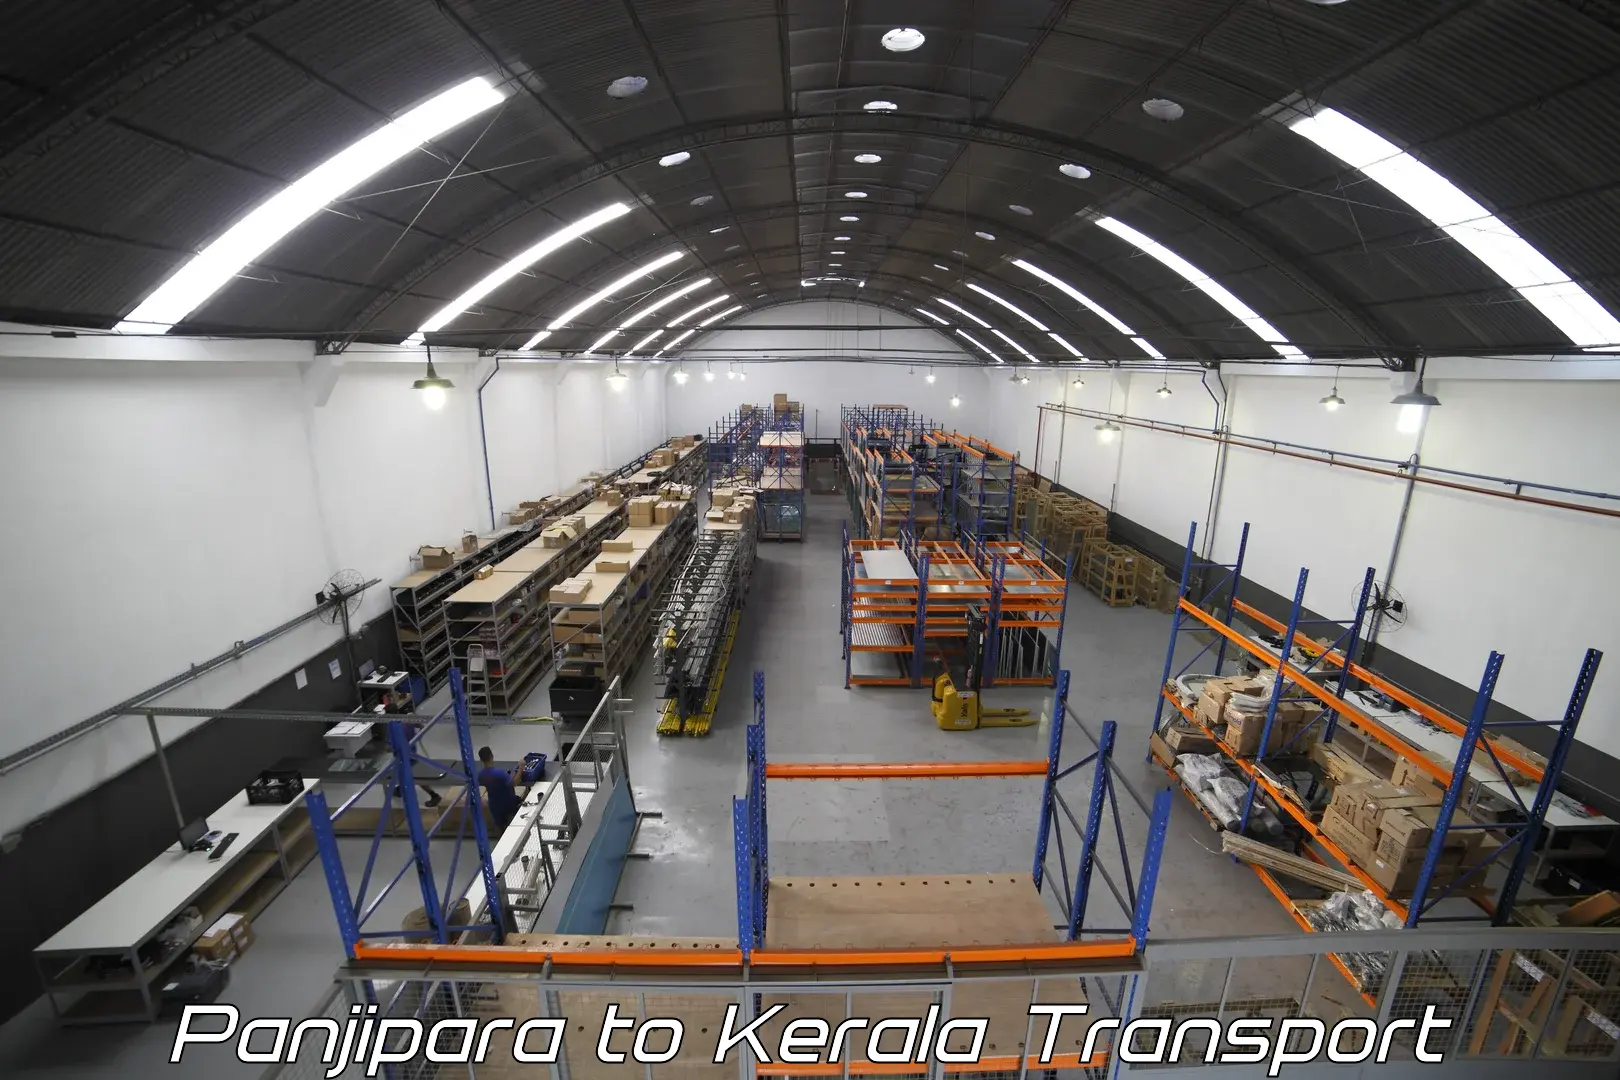 Pick up transport service Panjipara to Kerala